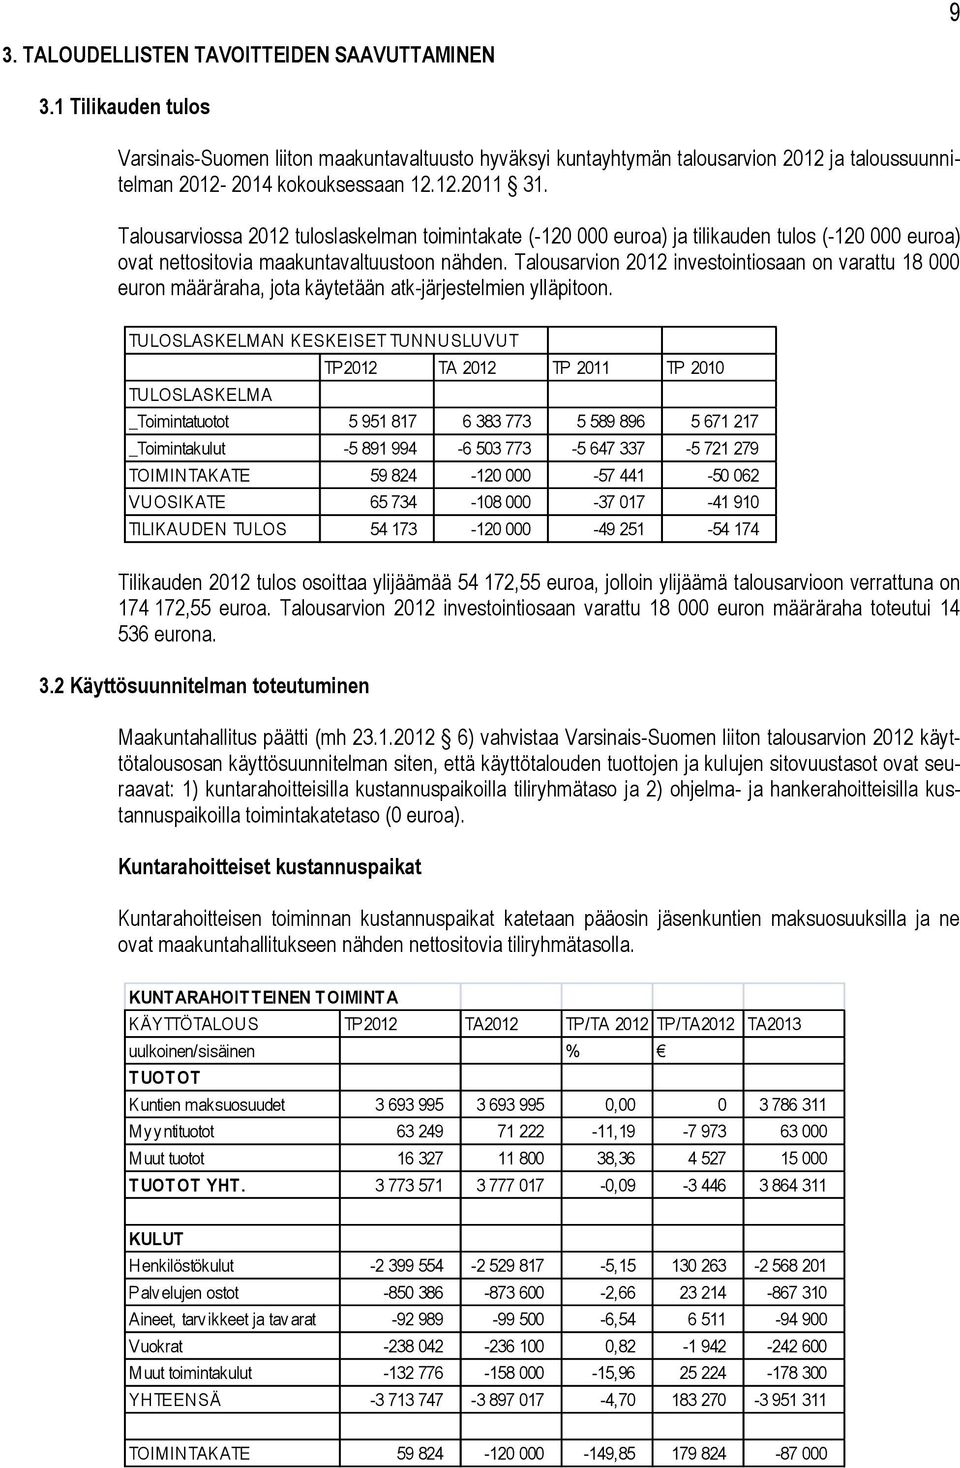 Talousarvion 2012 investointiosaan on varattu 18 000 euron määräraha, jota käytetään atk-järjestelmien ylläpitoon.